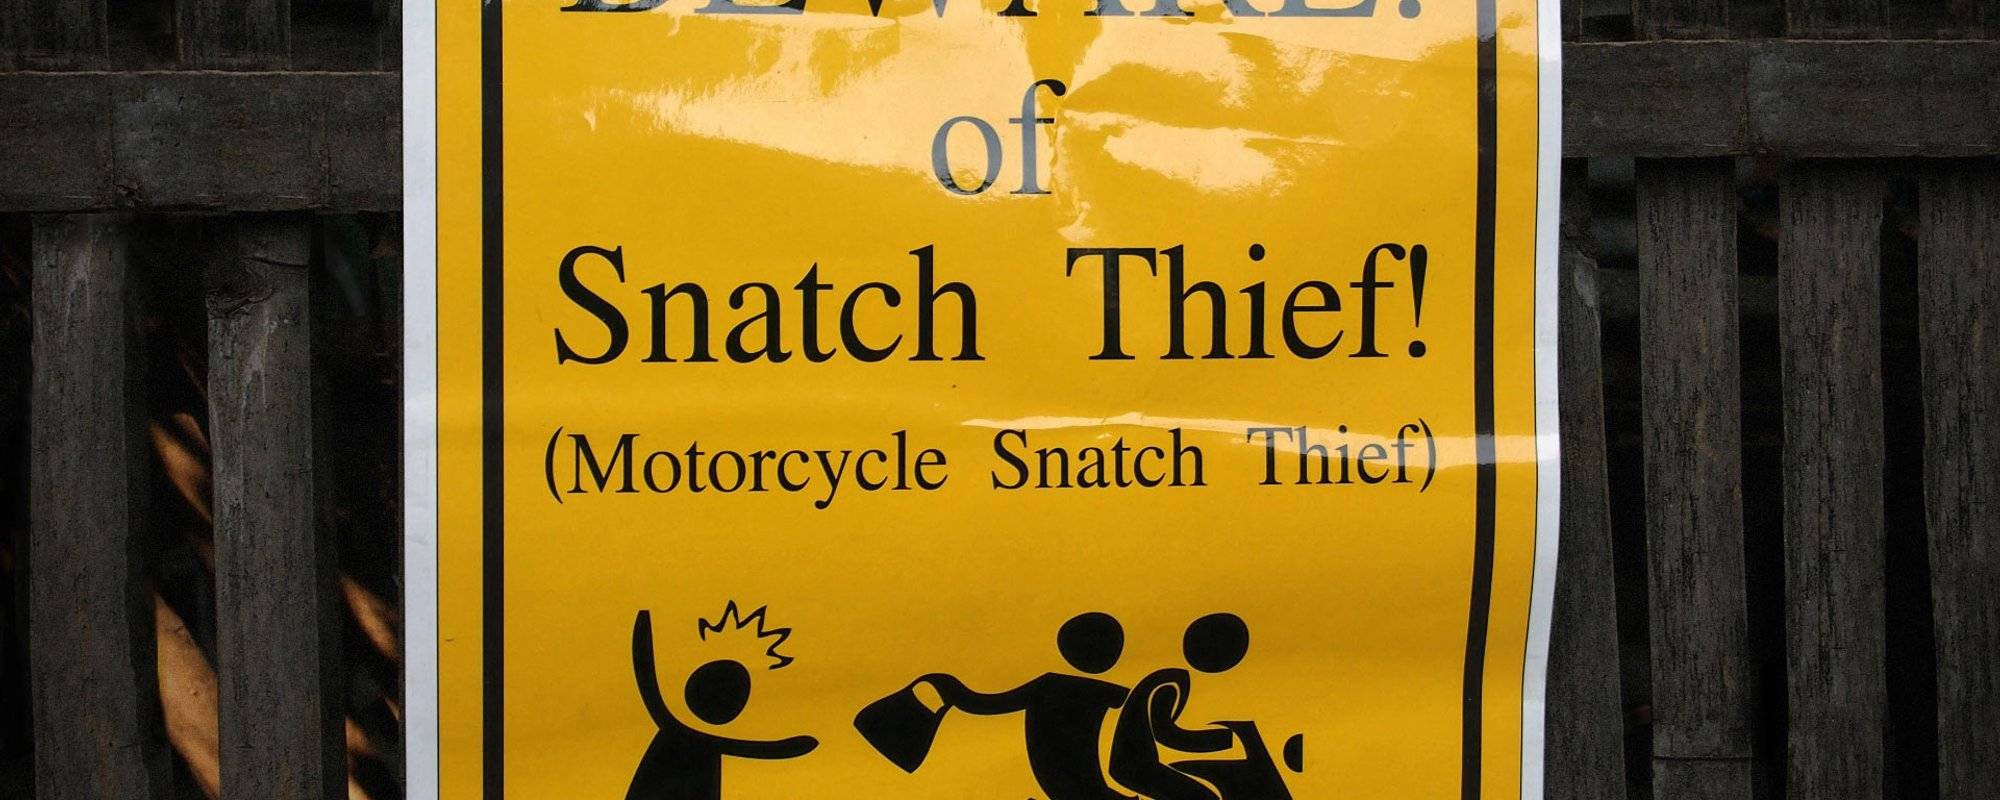 Beware of motorbike snatch thieves!